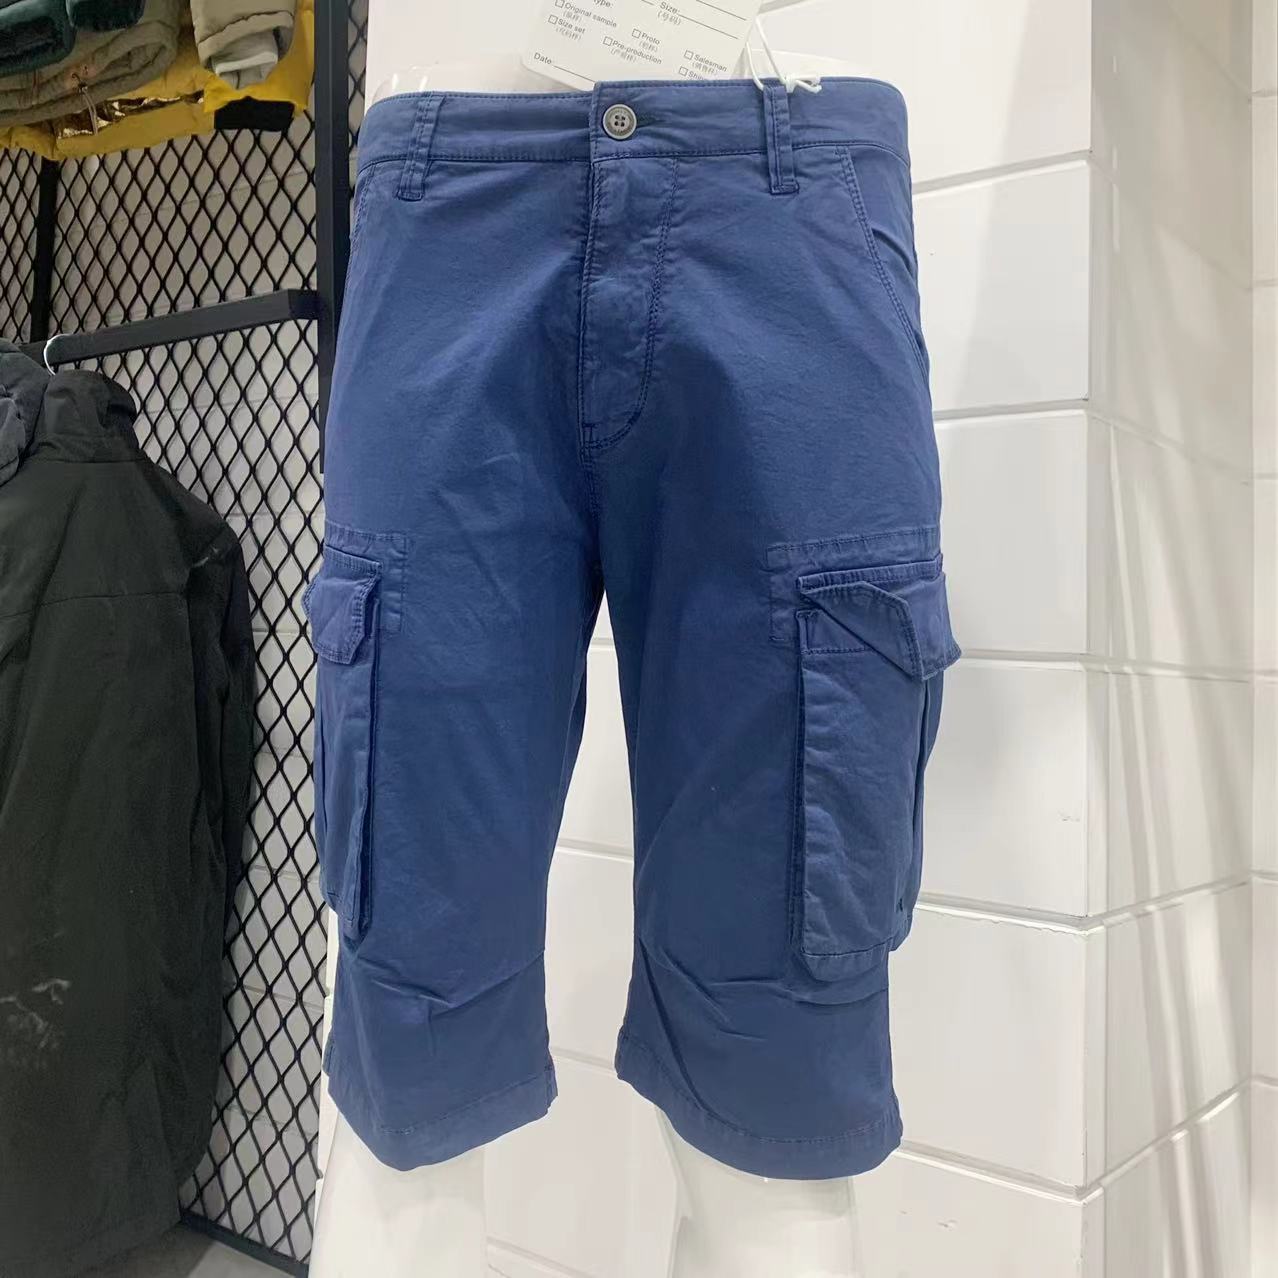 Men's cargo short;Men's cotton short;Men's garment dye short.